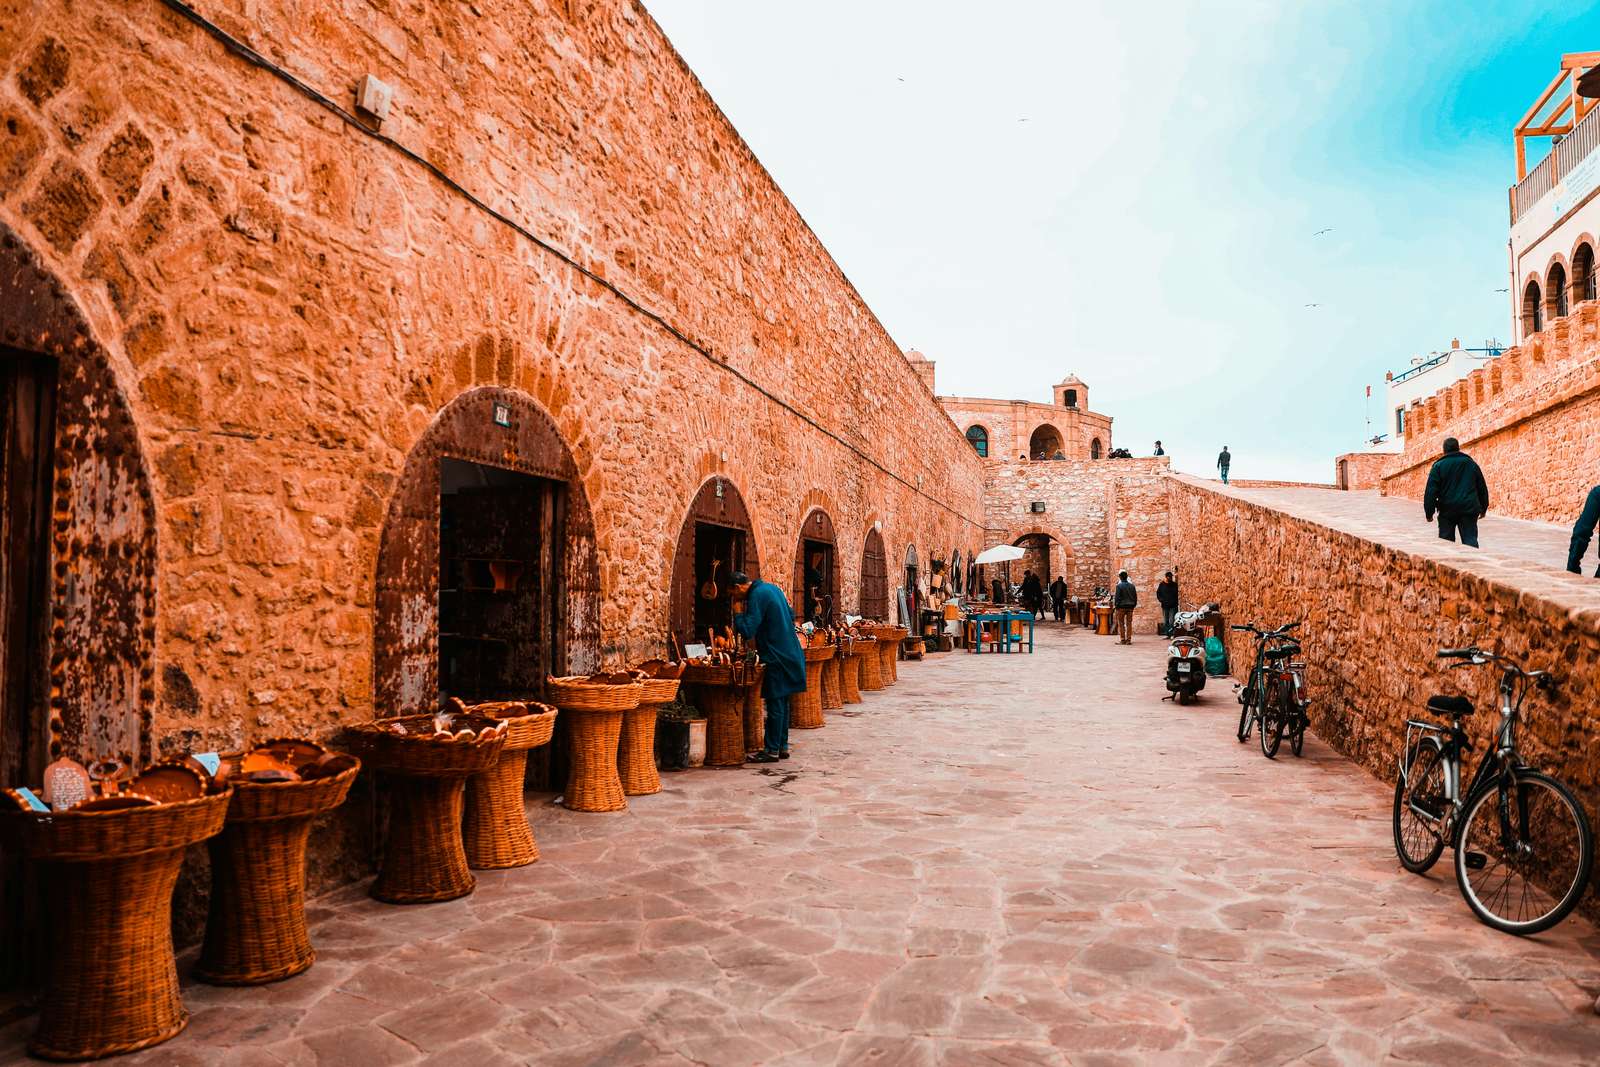 Касба, Эс-Сувейра, Марокко пазл онлайн